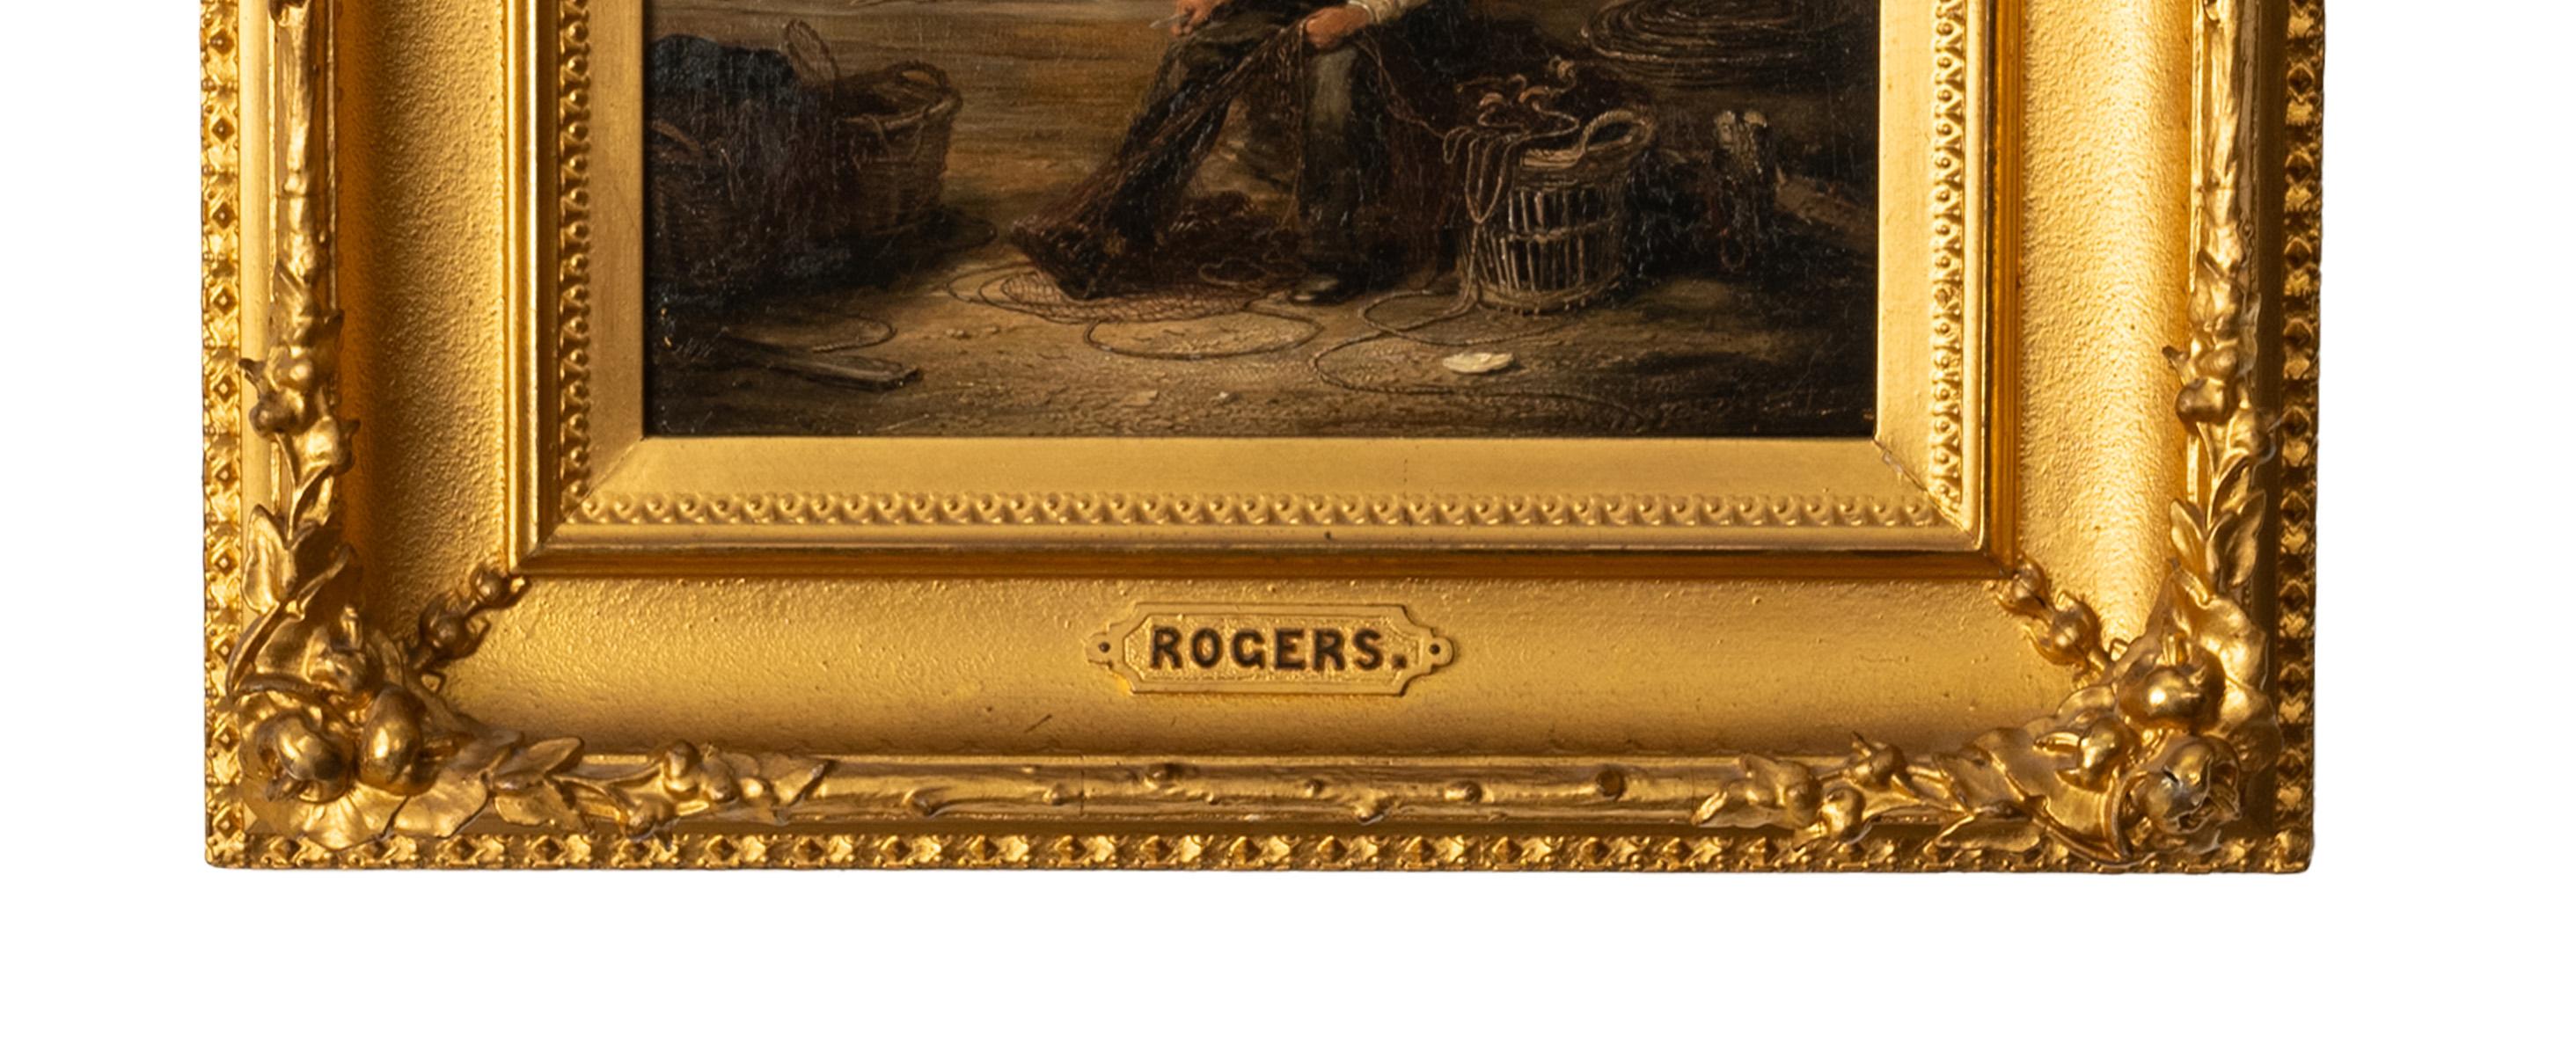 Une bonne et fantaisiste huile sur toile du peintre irlandais William P. Rogers (fl 1846-1872). L'œuvre représente un pêcheur réparant ses filets, avec des paniers et des cordes au premier plan et des bateaux de pêche et d'autres pêcheurs à